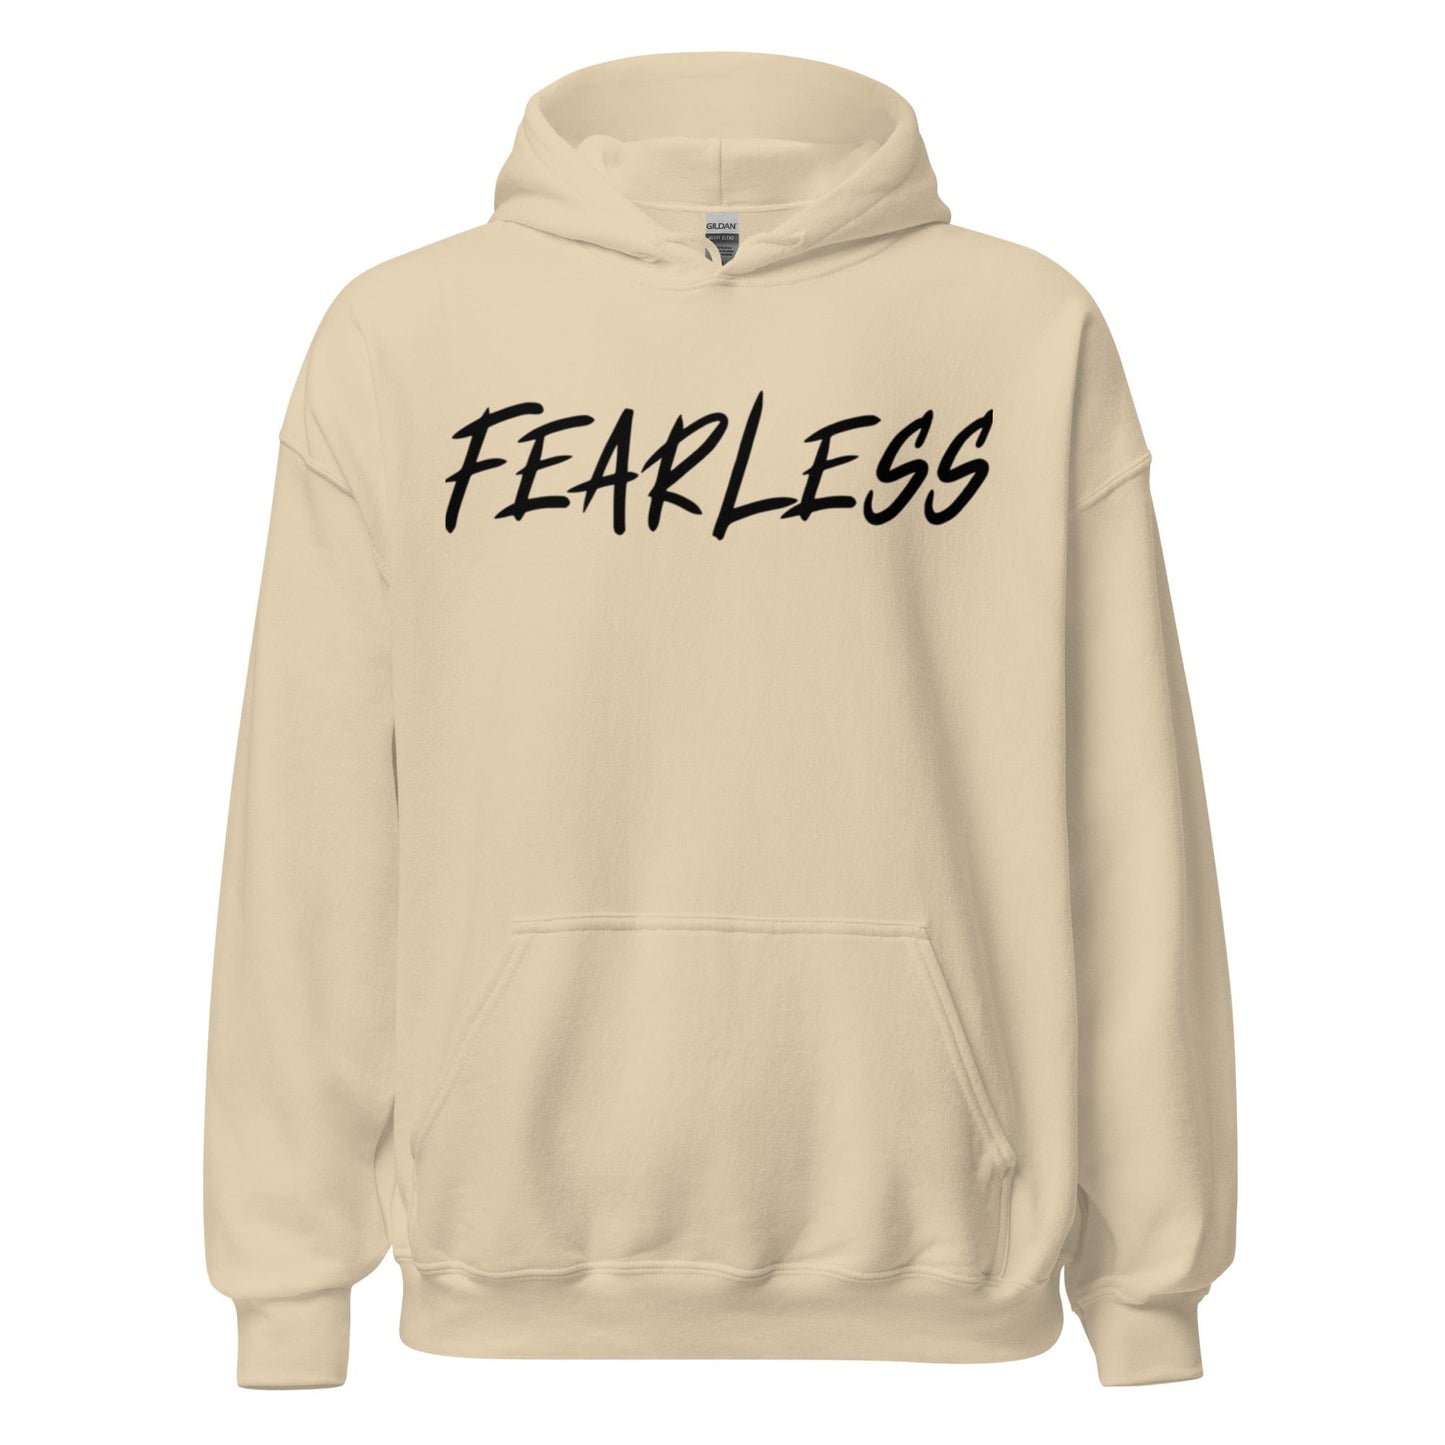 Fearless - Adult Hoodie